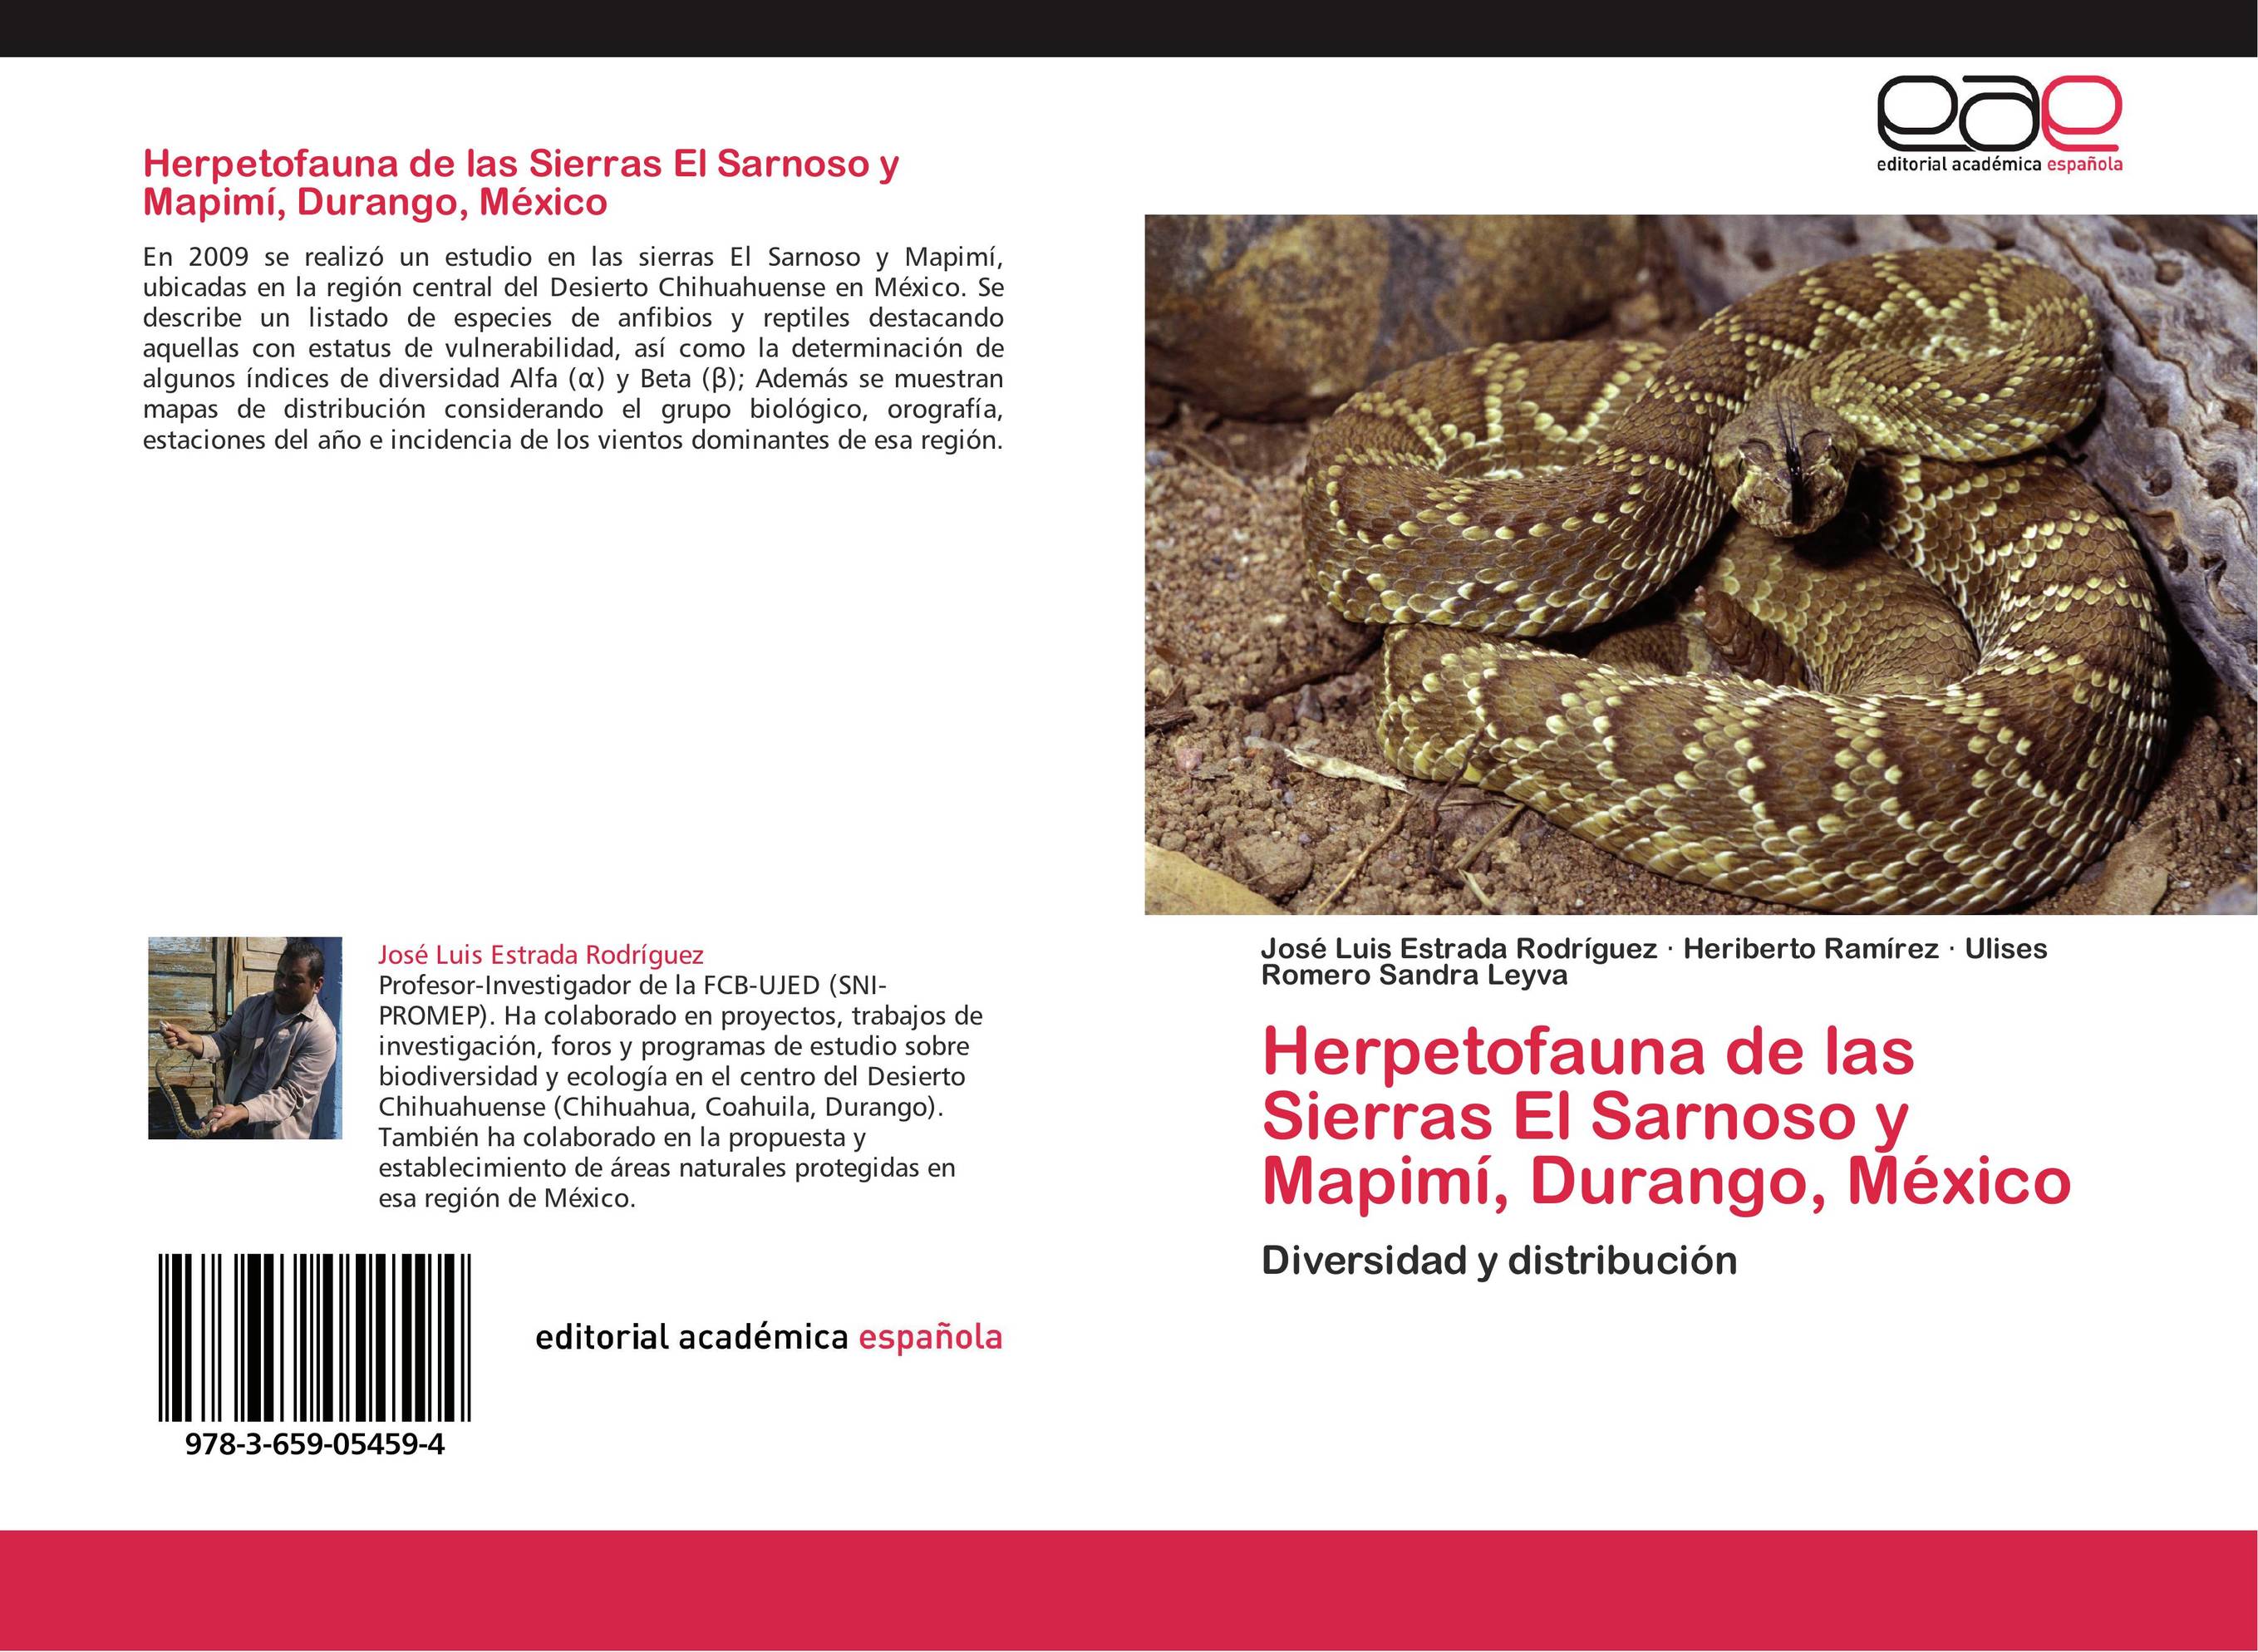 Herpetofauna de las Sierras El Sarnoso y Mapimí, Durango, México